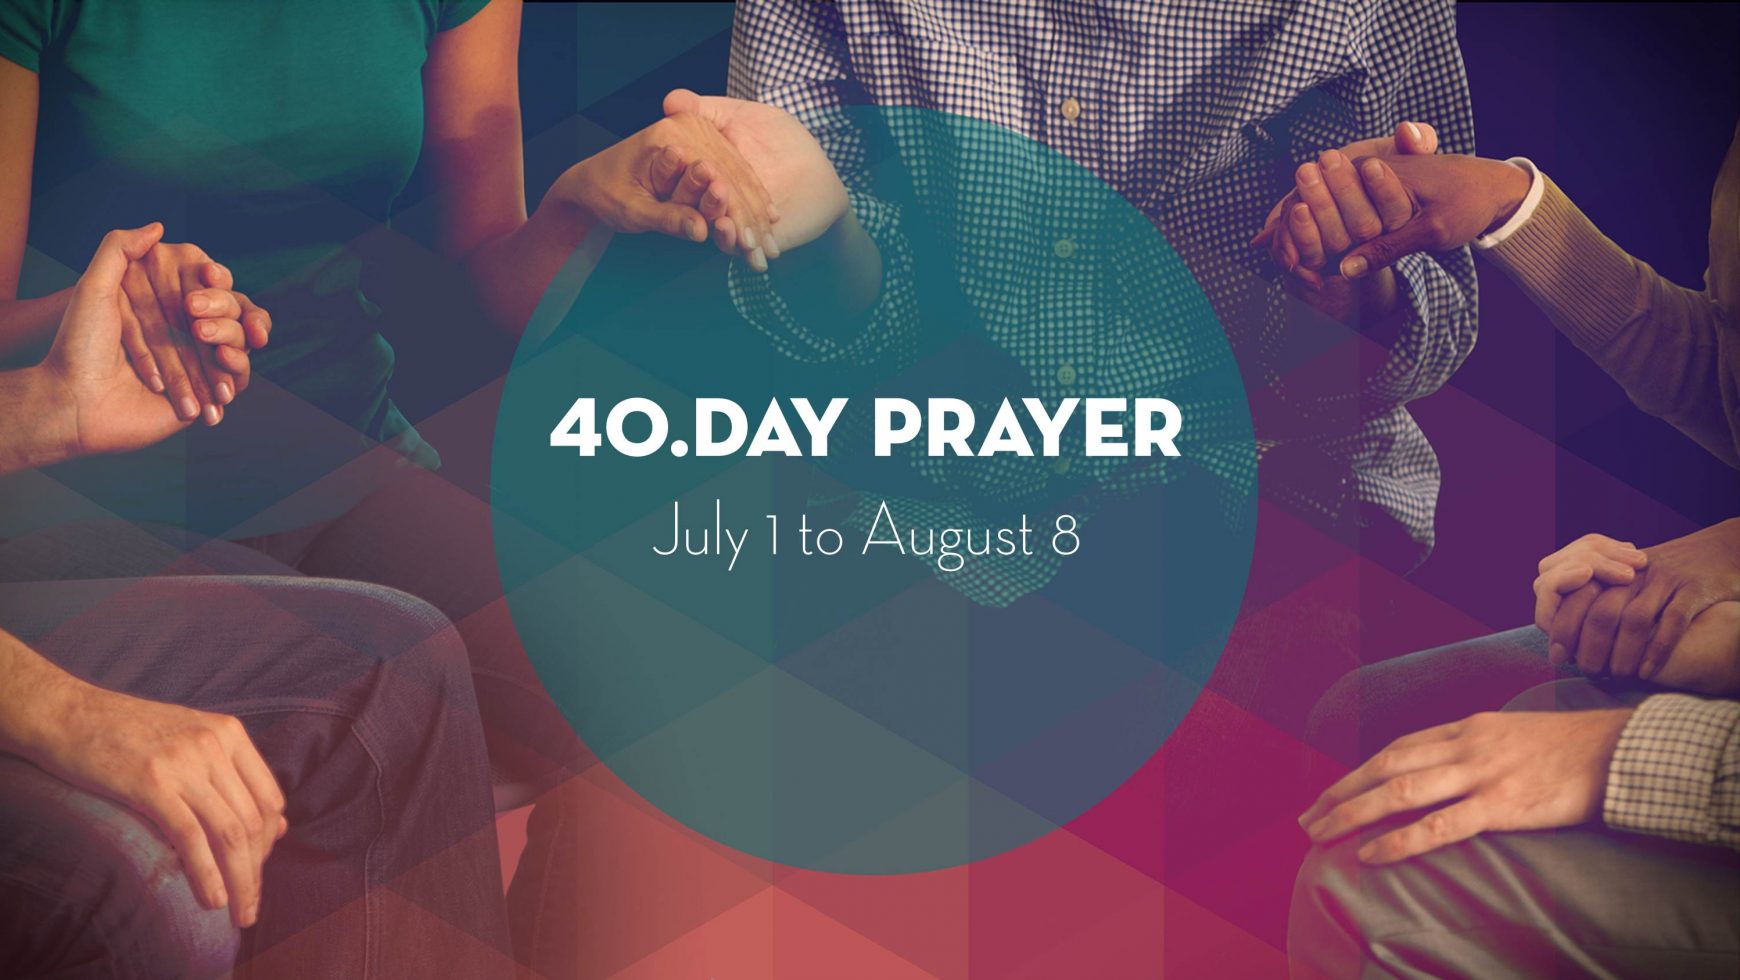 40.DAY PRAYER